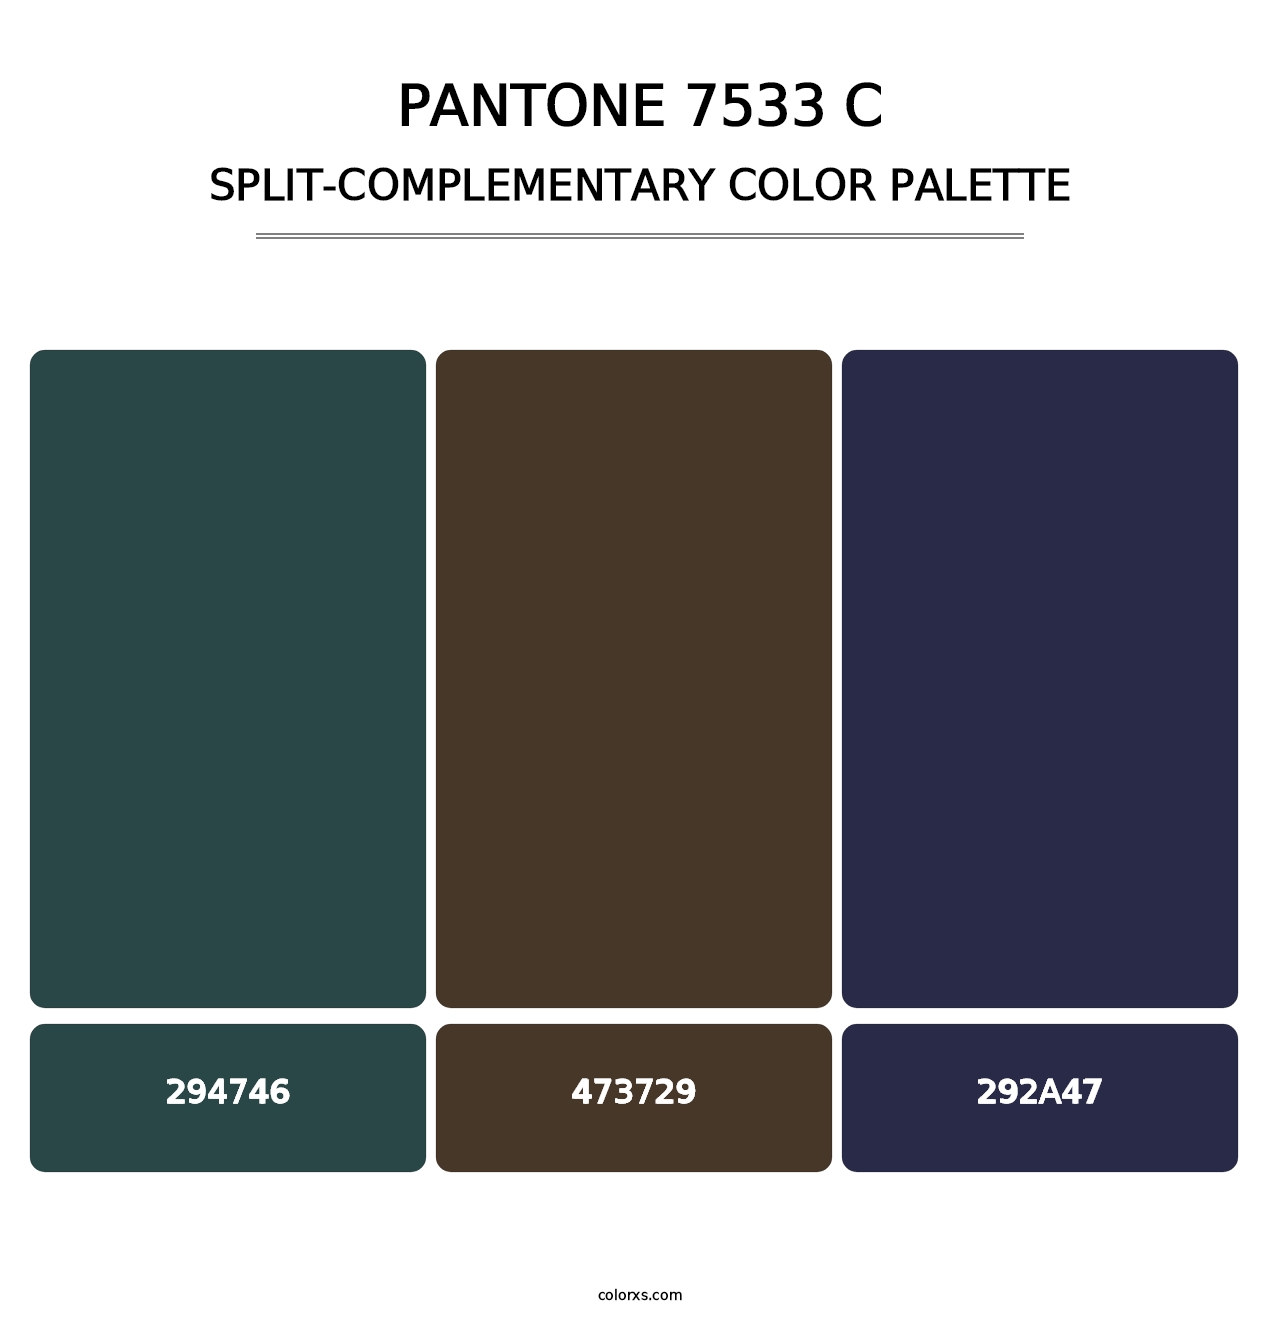 PANTONE 7533 C - Split-Complementary Color Palette